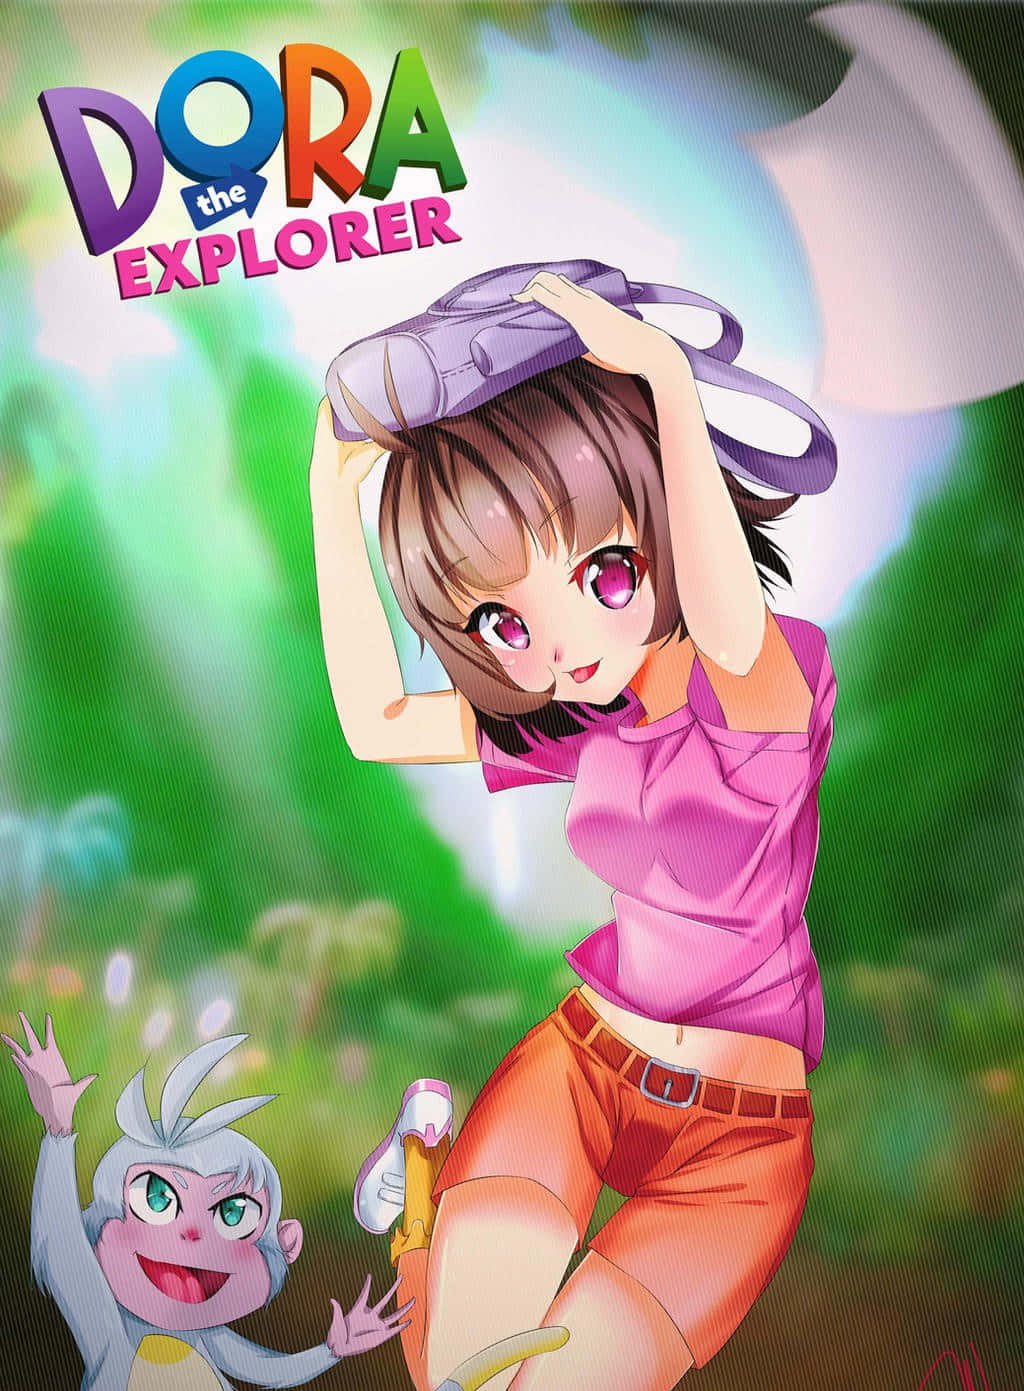 Go on an adventure with Dora!